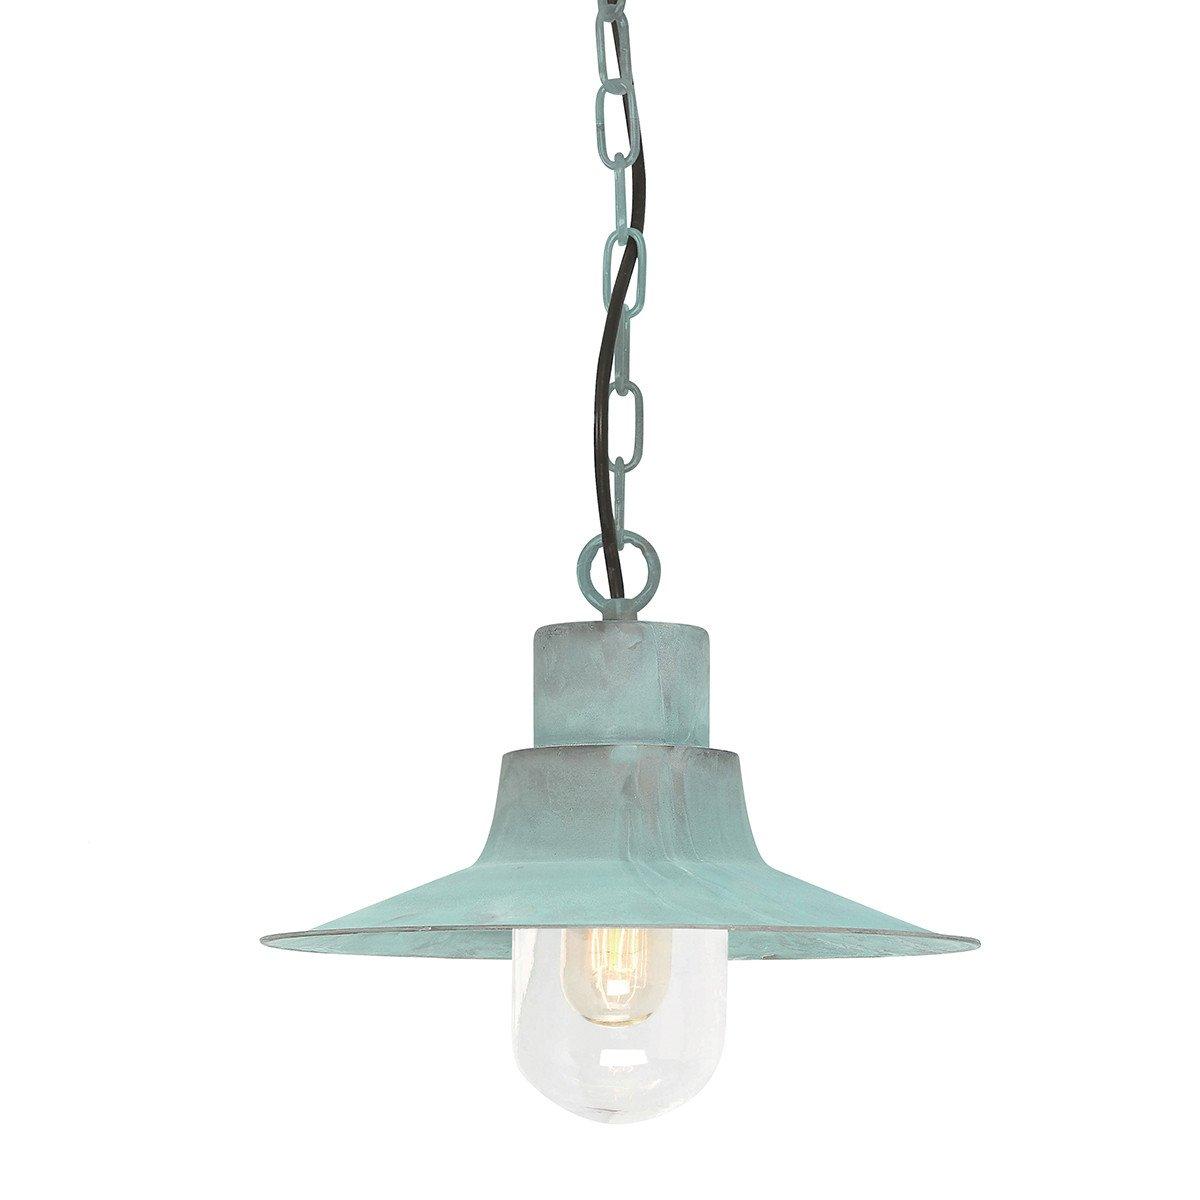 Sheldon 1 Light Outdoor Ceiling Chain Lantern Verdigris IP44 E27